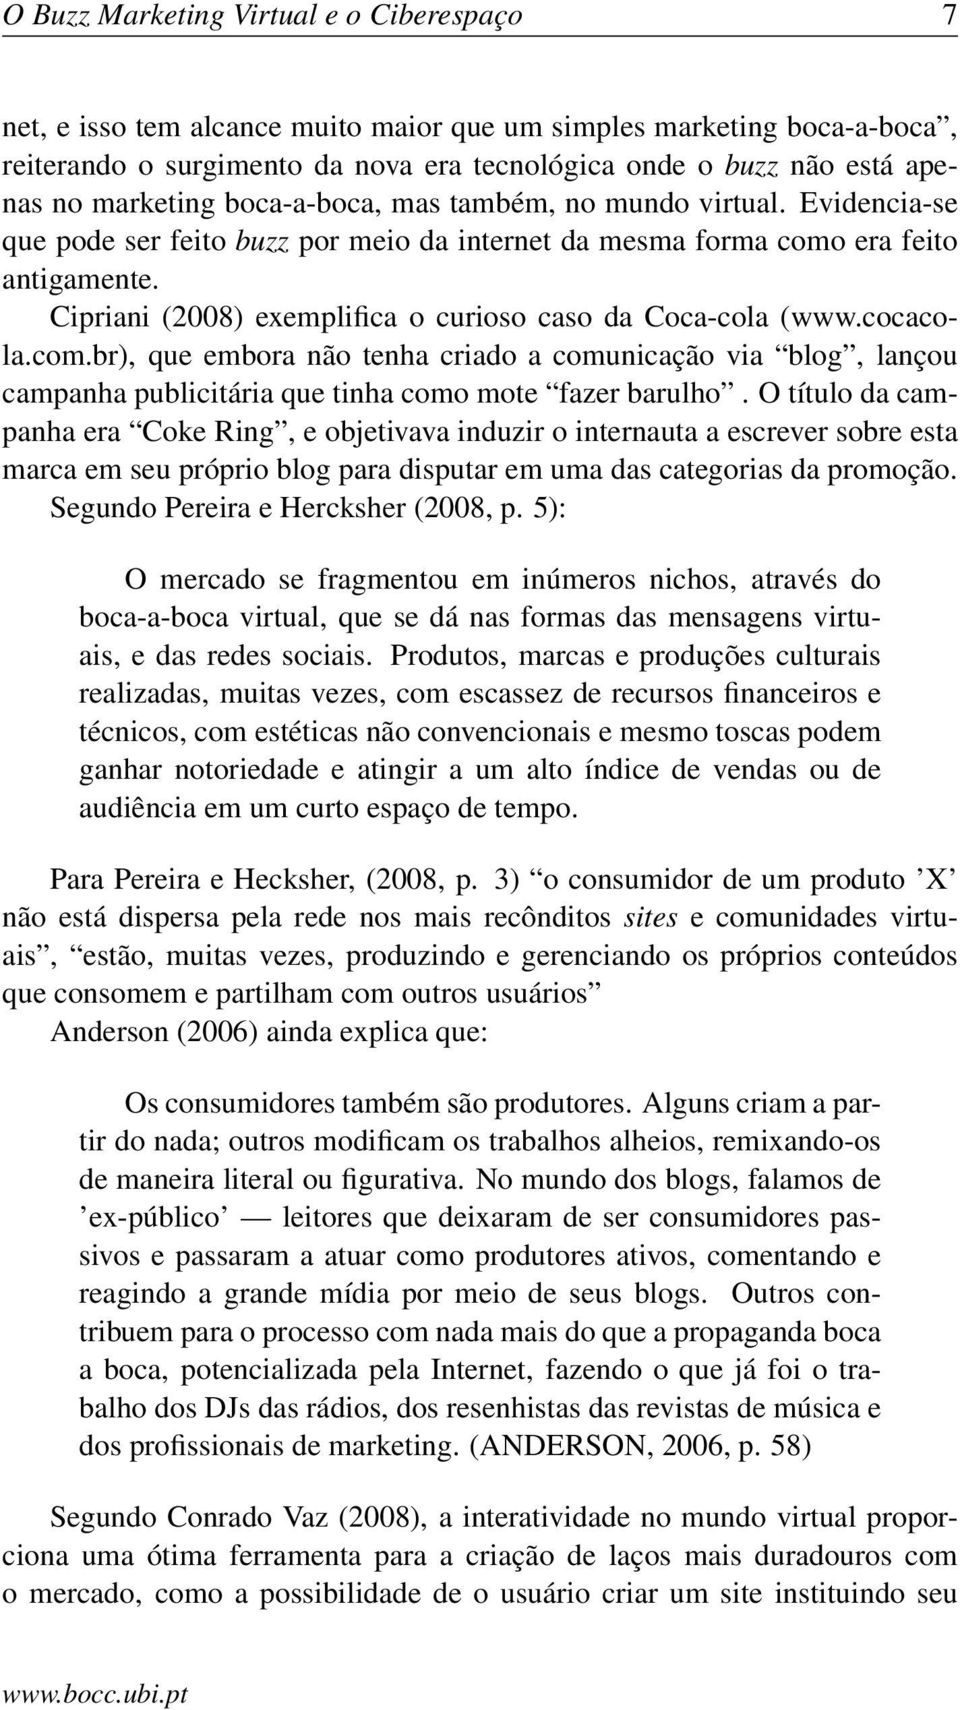 Cipriani (2008) exemplifica o curioso caso da Coca-cola (www.cocacola.com.br), que embora não tenha criado a comunicação via blog, lançou campanha publicitária que tinha como mote fazer barulho.